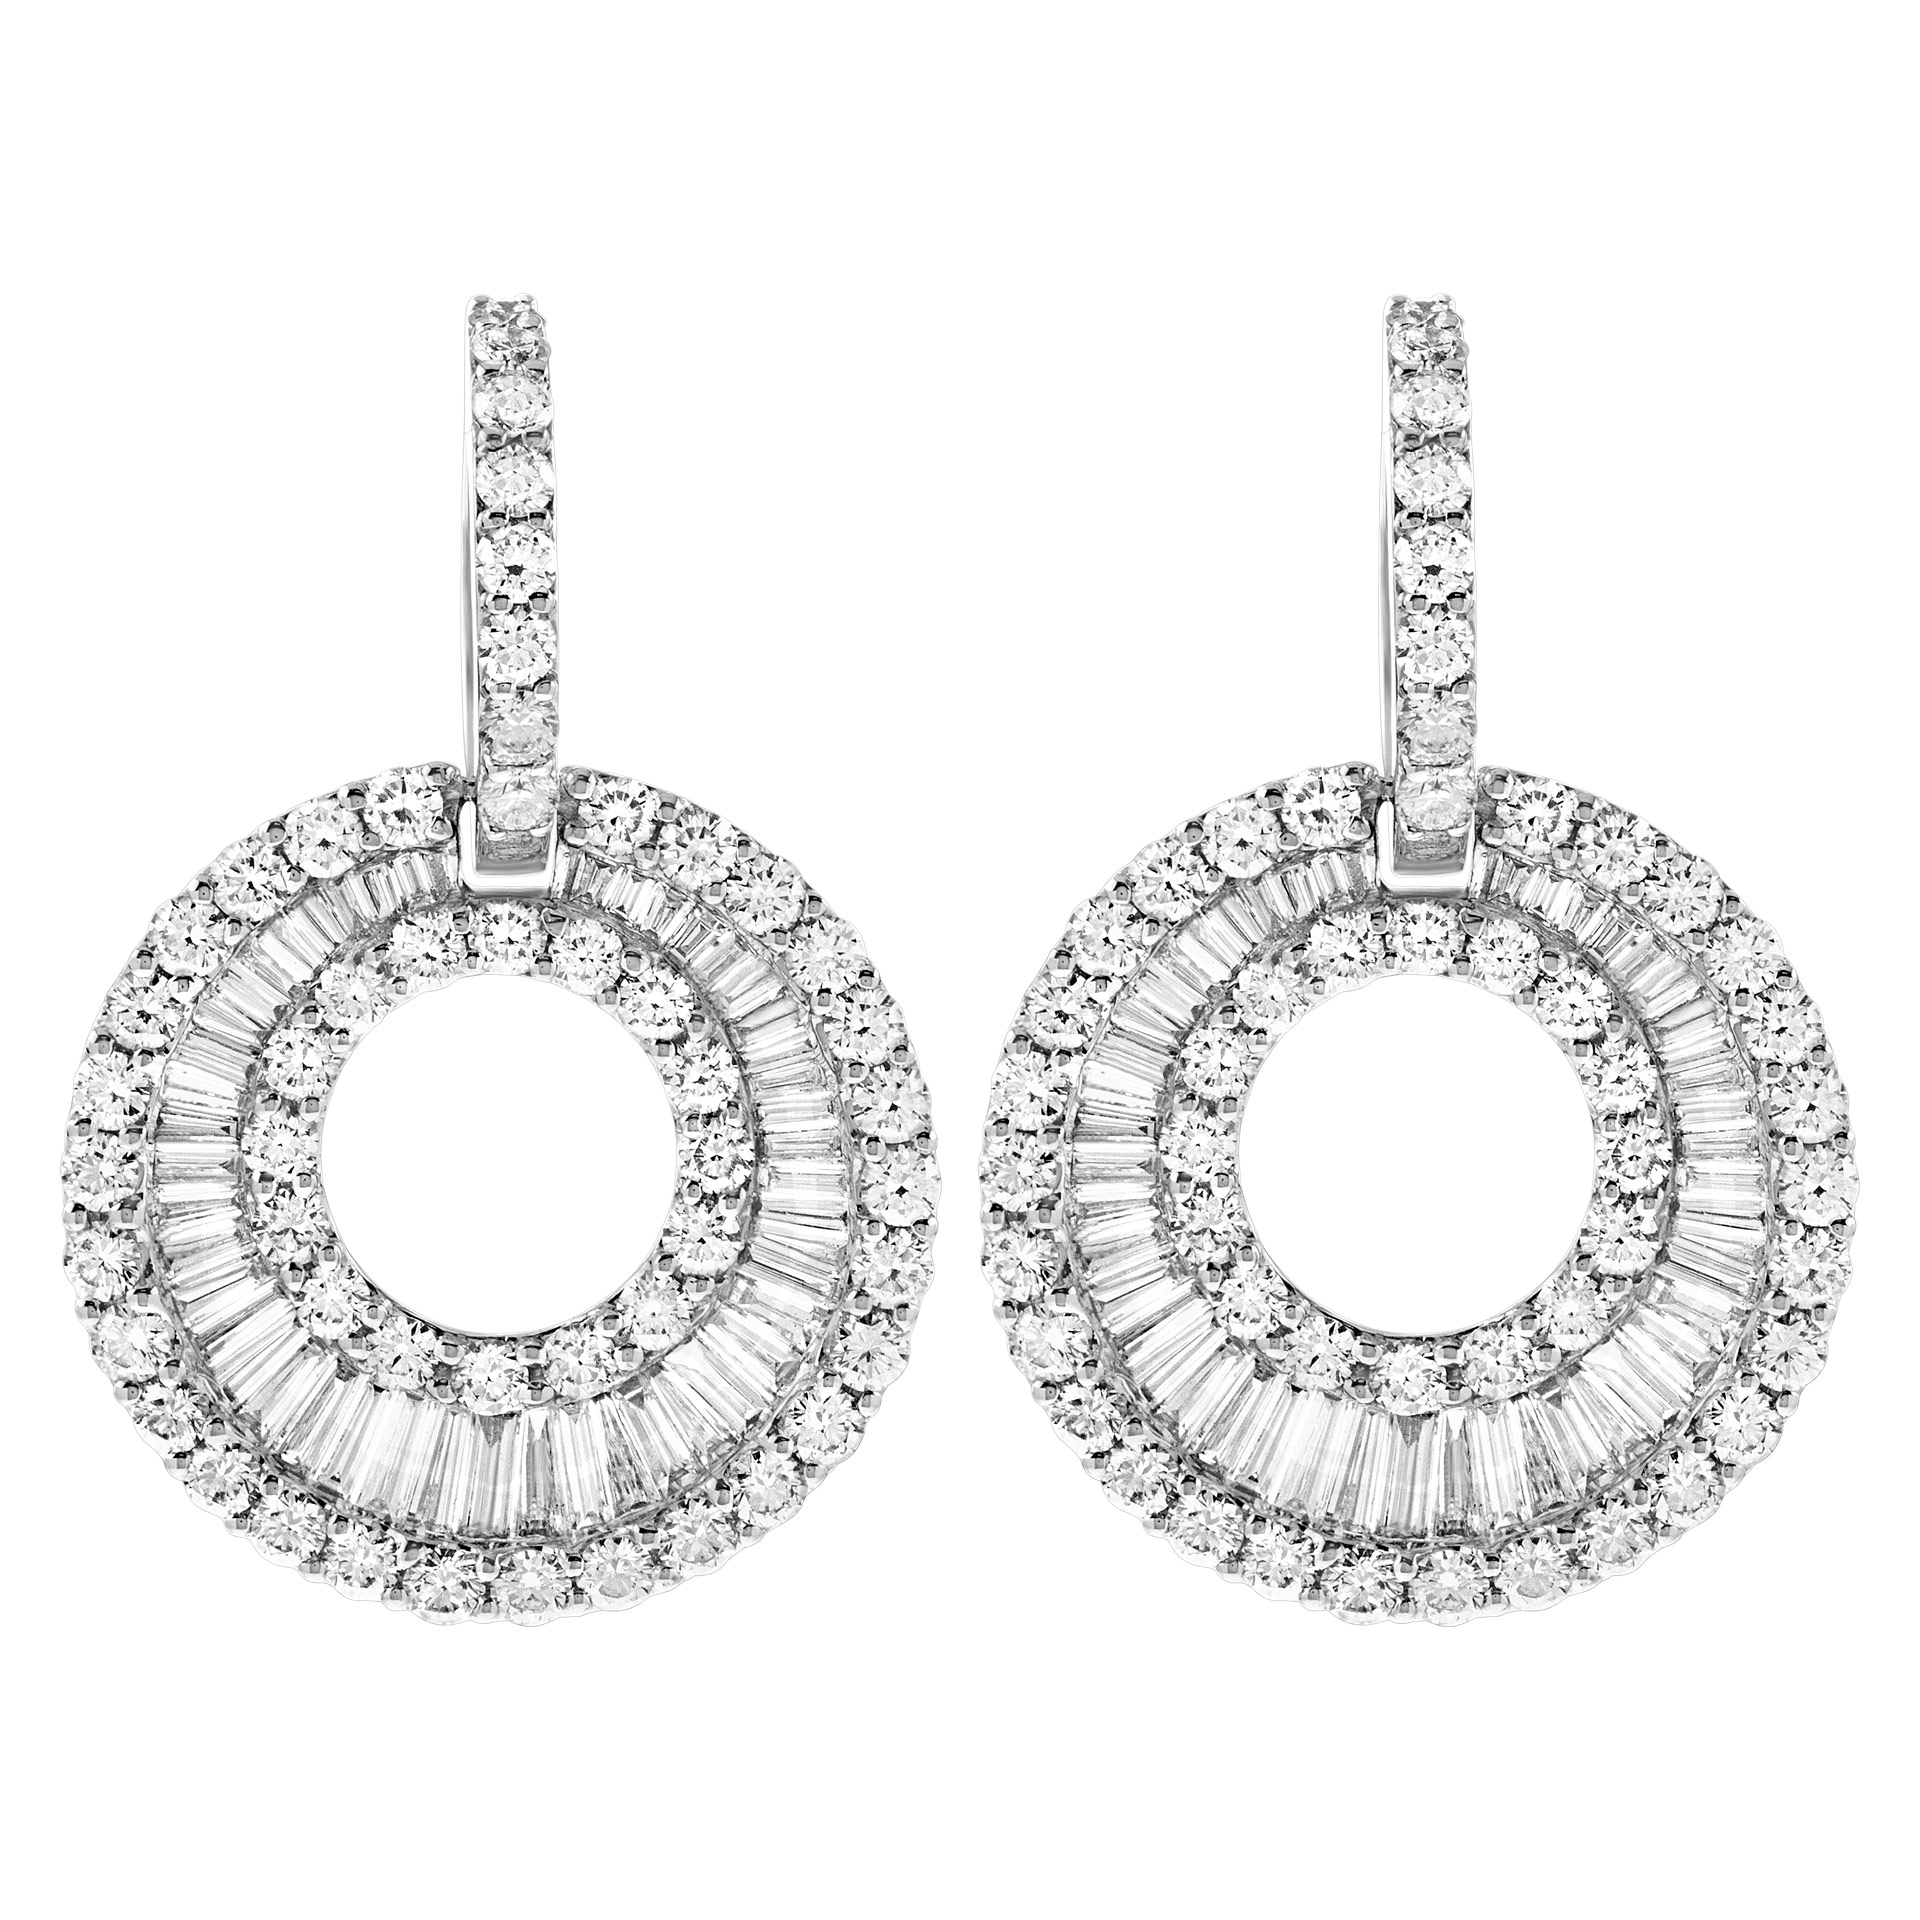 Sparkling diamond earrings in 18k white gold